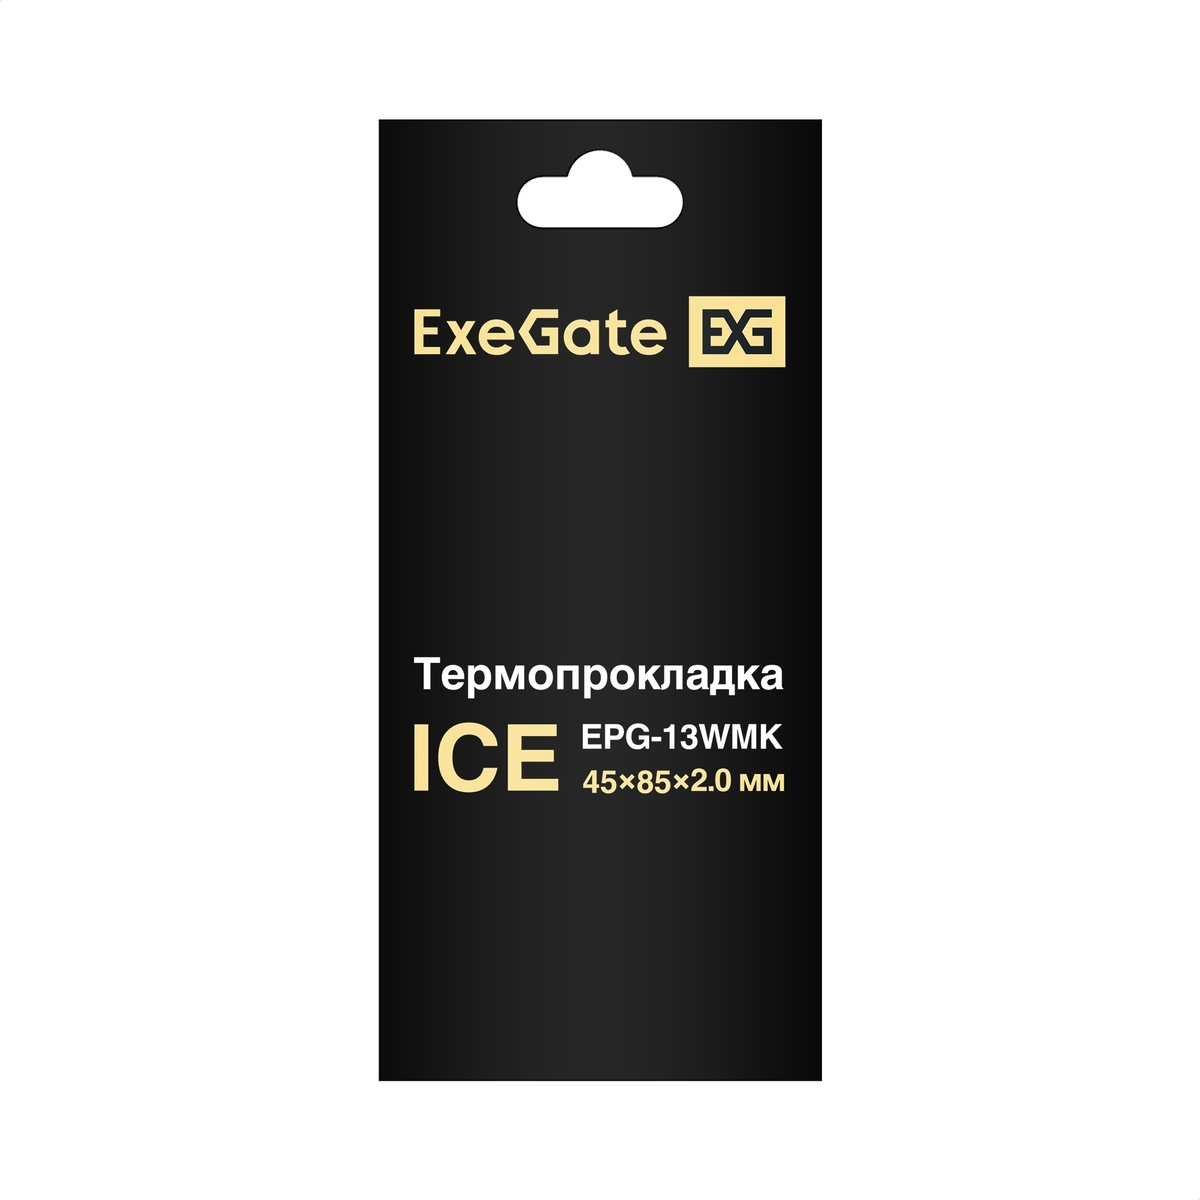 Thermal Pad ExeGate Ice EPG-13WMK 45x85x2.0